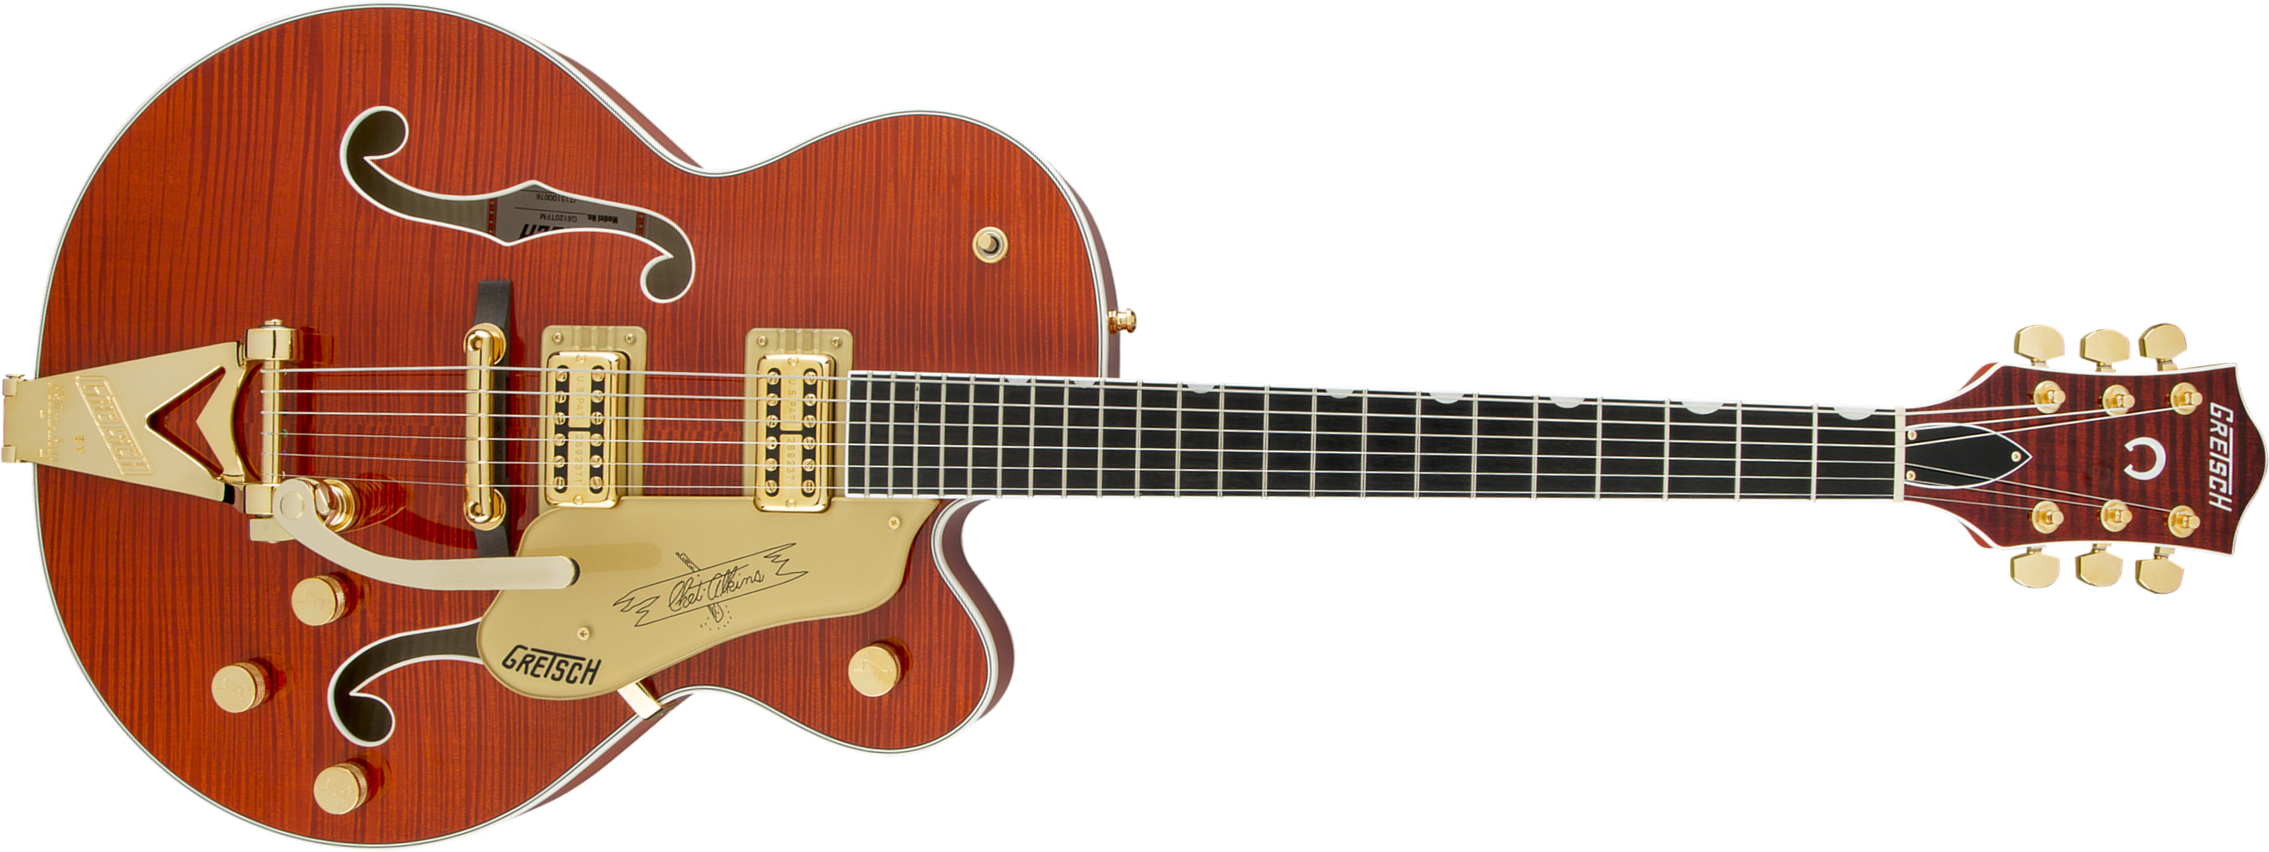 Gretsch G6120tfm Players Edition Nashville Pro Jap Bigsby Eb - Orange Stain - Guitare Électrique 1/2 Caisse - Main picture